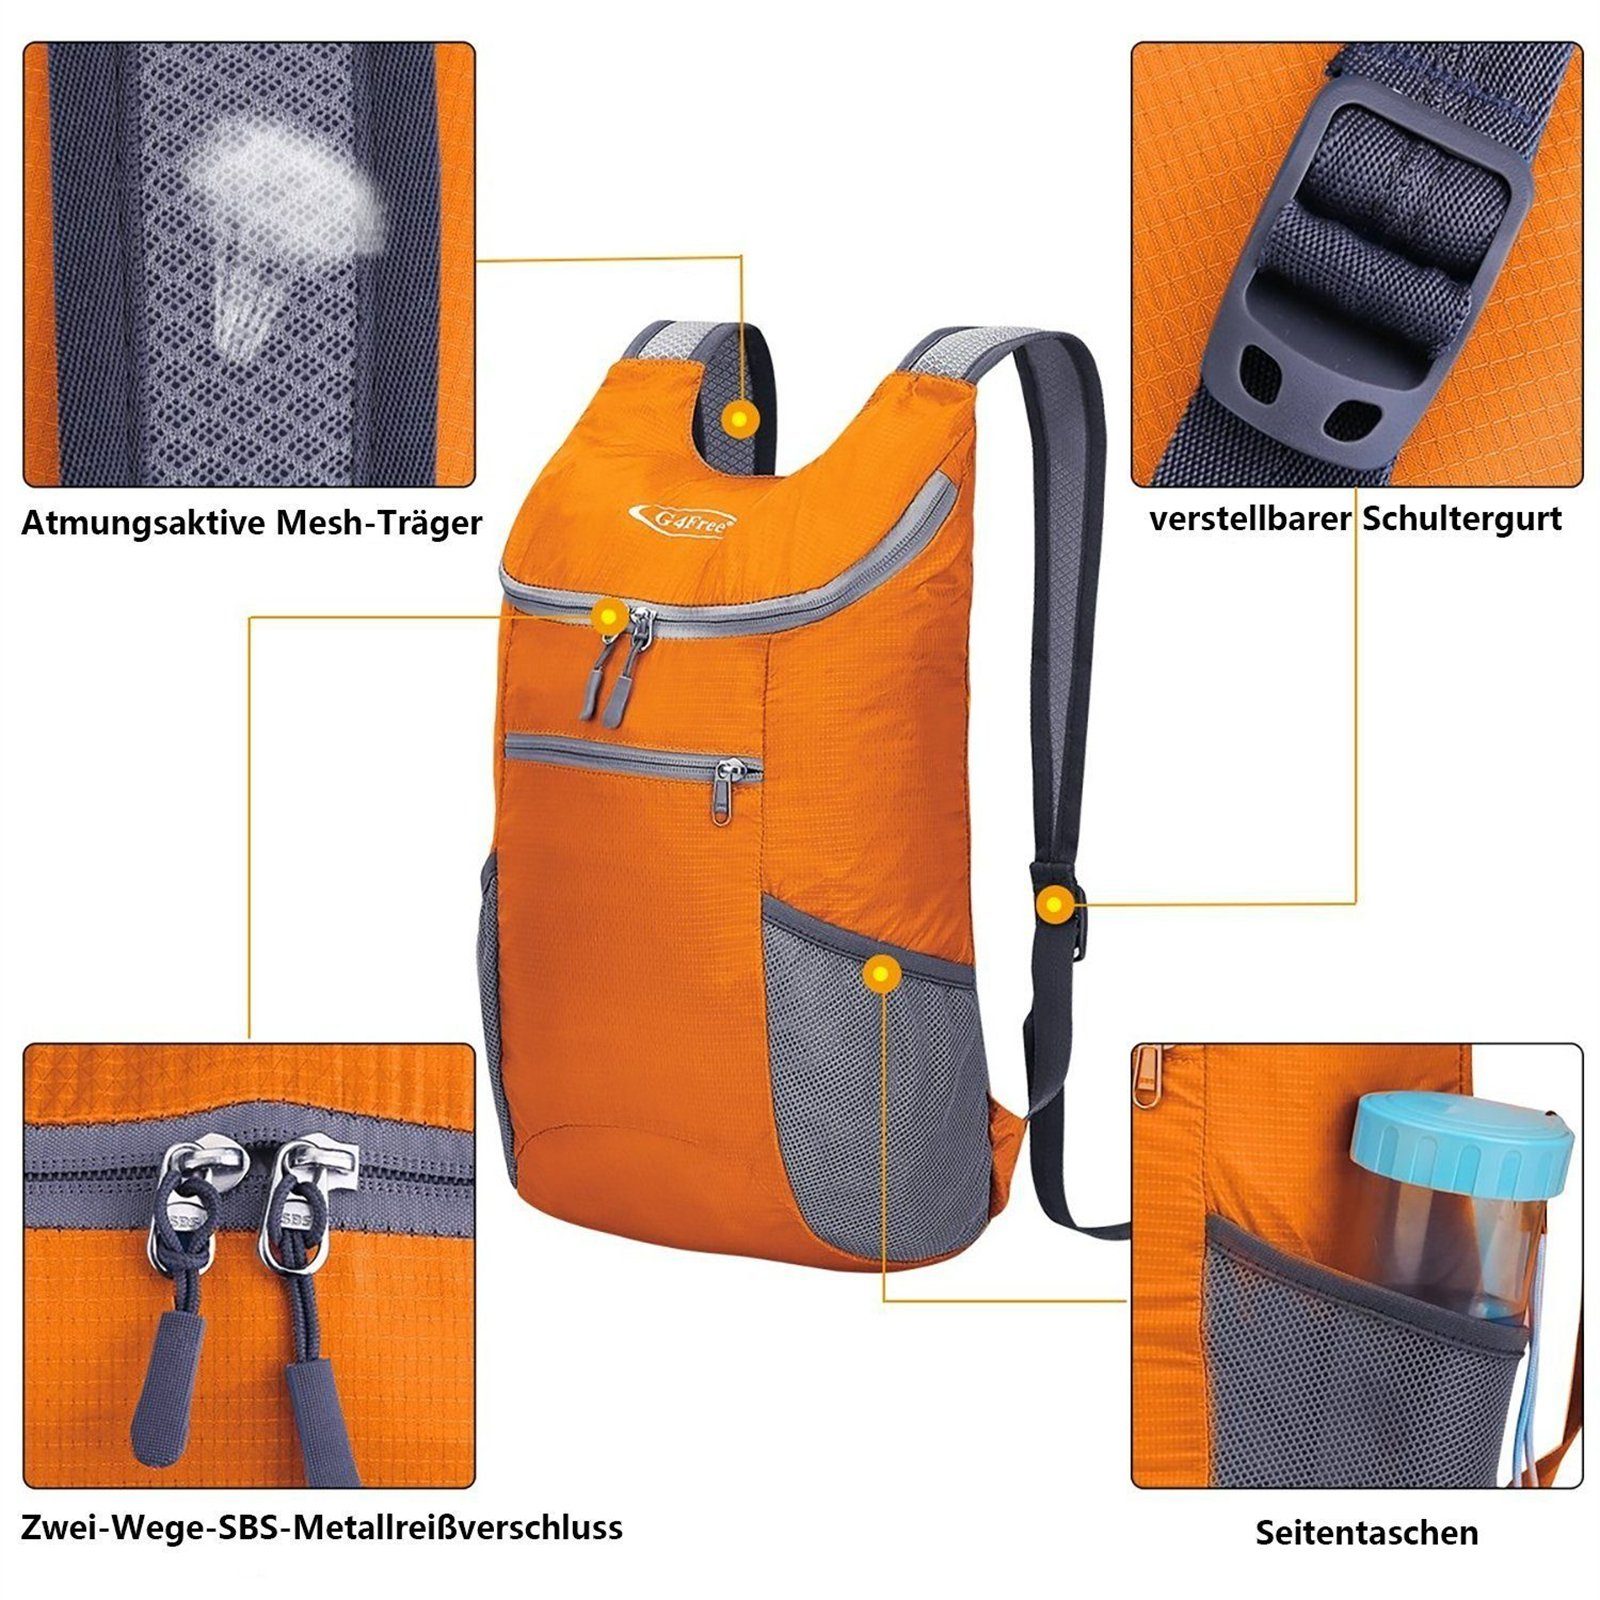 11 L, Orange Wanderrucksack, Wanderrucksack Rucksack Backpack G4Free Kleiner